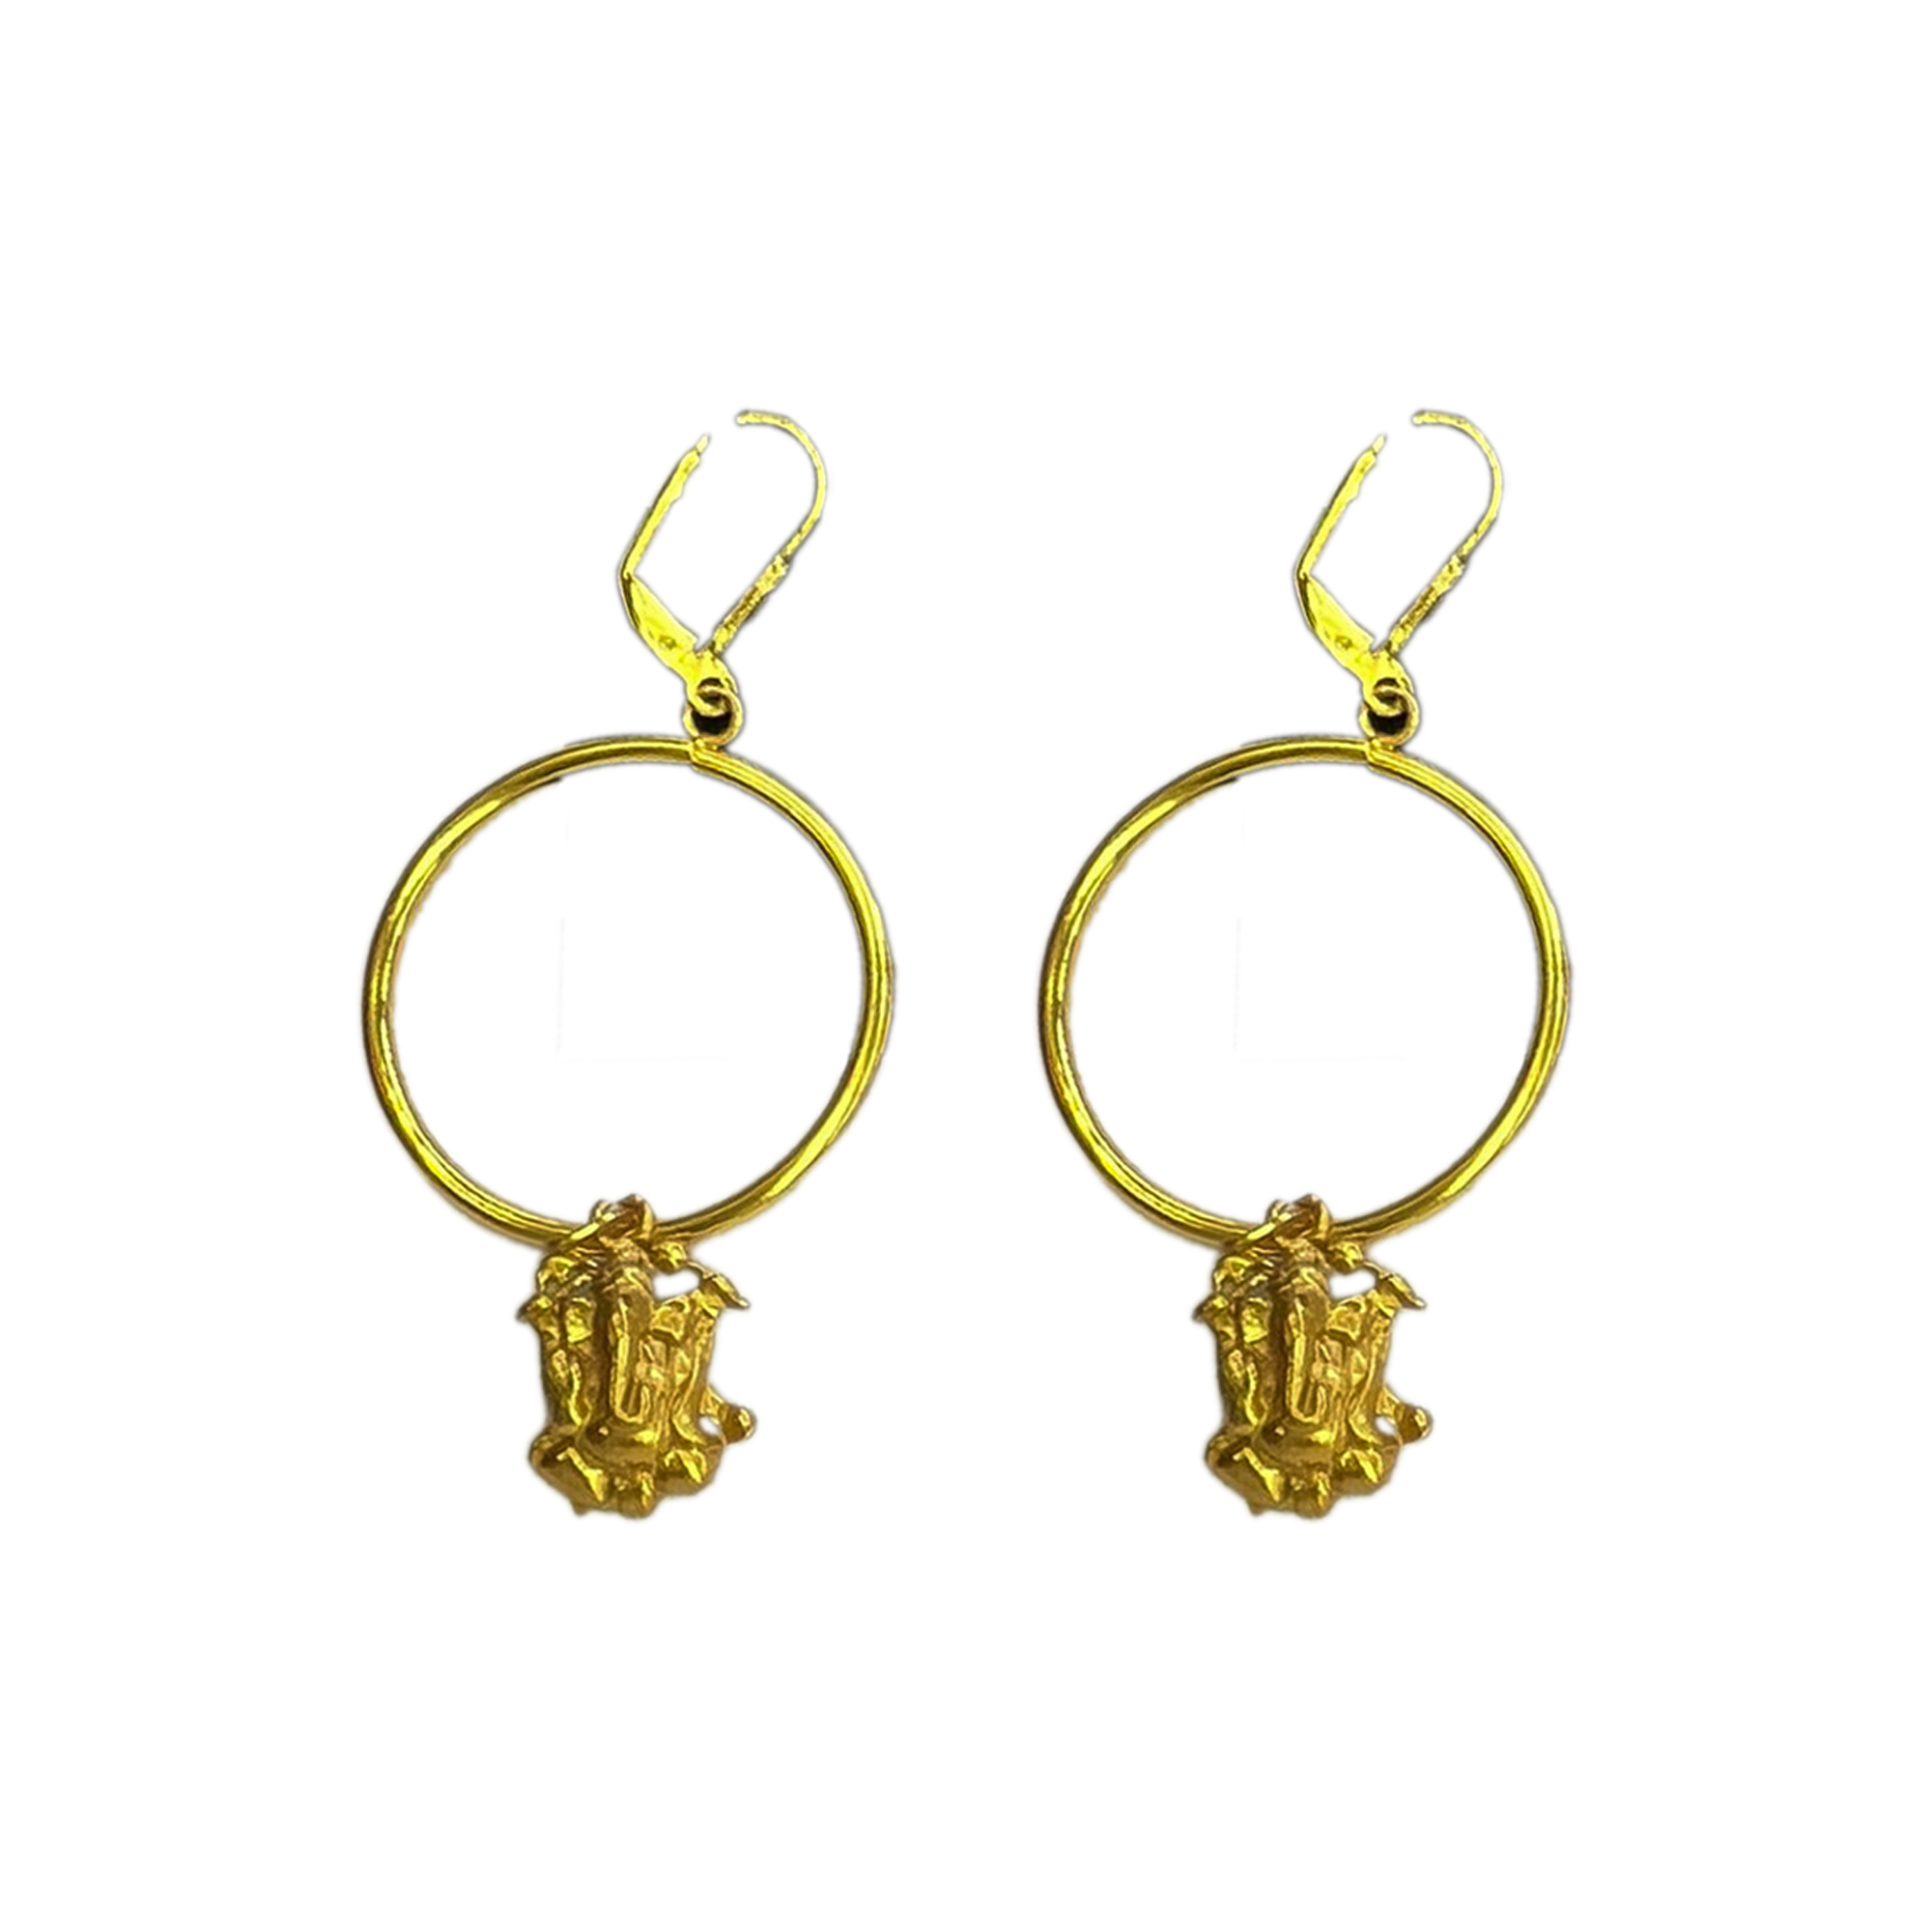 Wearing Gold-Plated Lord Ganesha Hoop Earrings